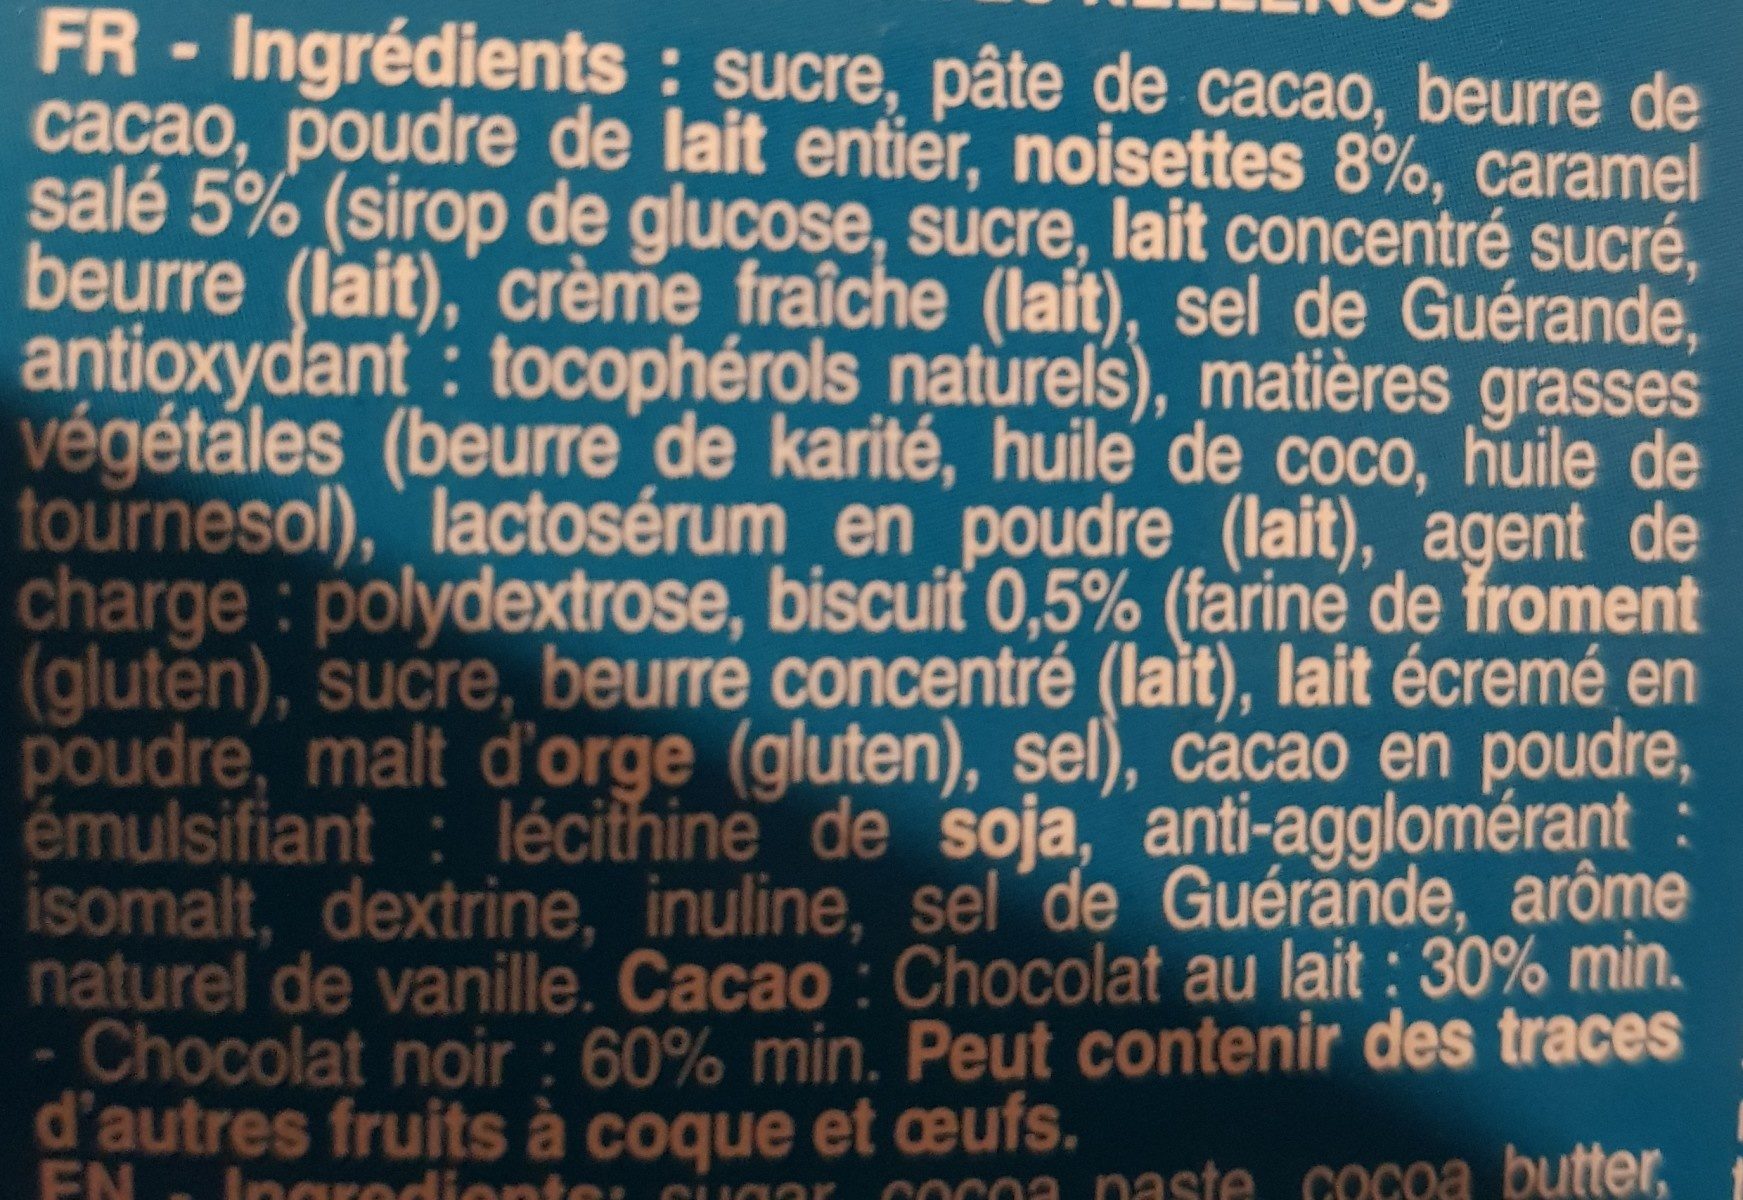 Les chocolats du chat - Ingredients - fr